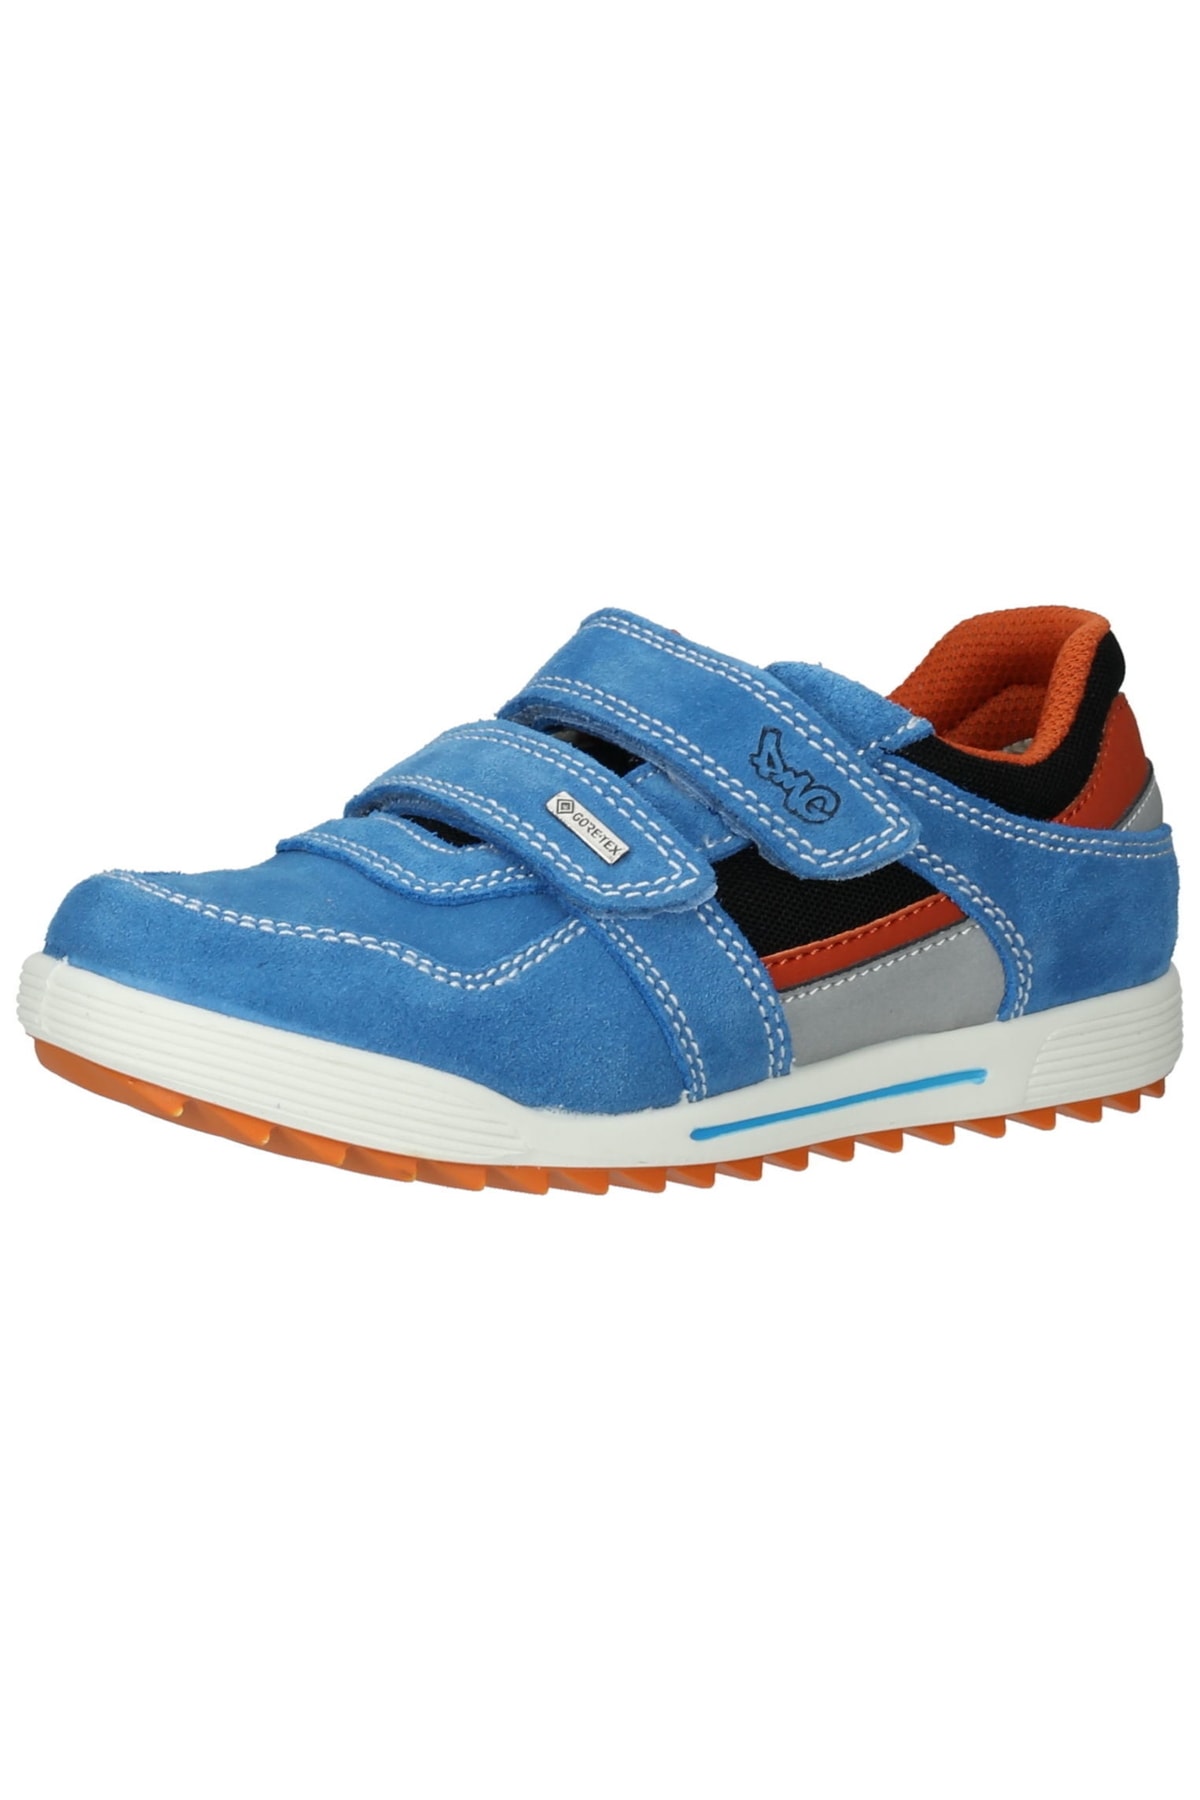 Primigi Sneaker Blau Flacher Absatz Fast ausverkauft